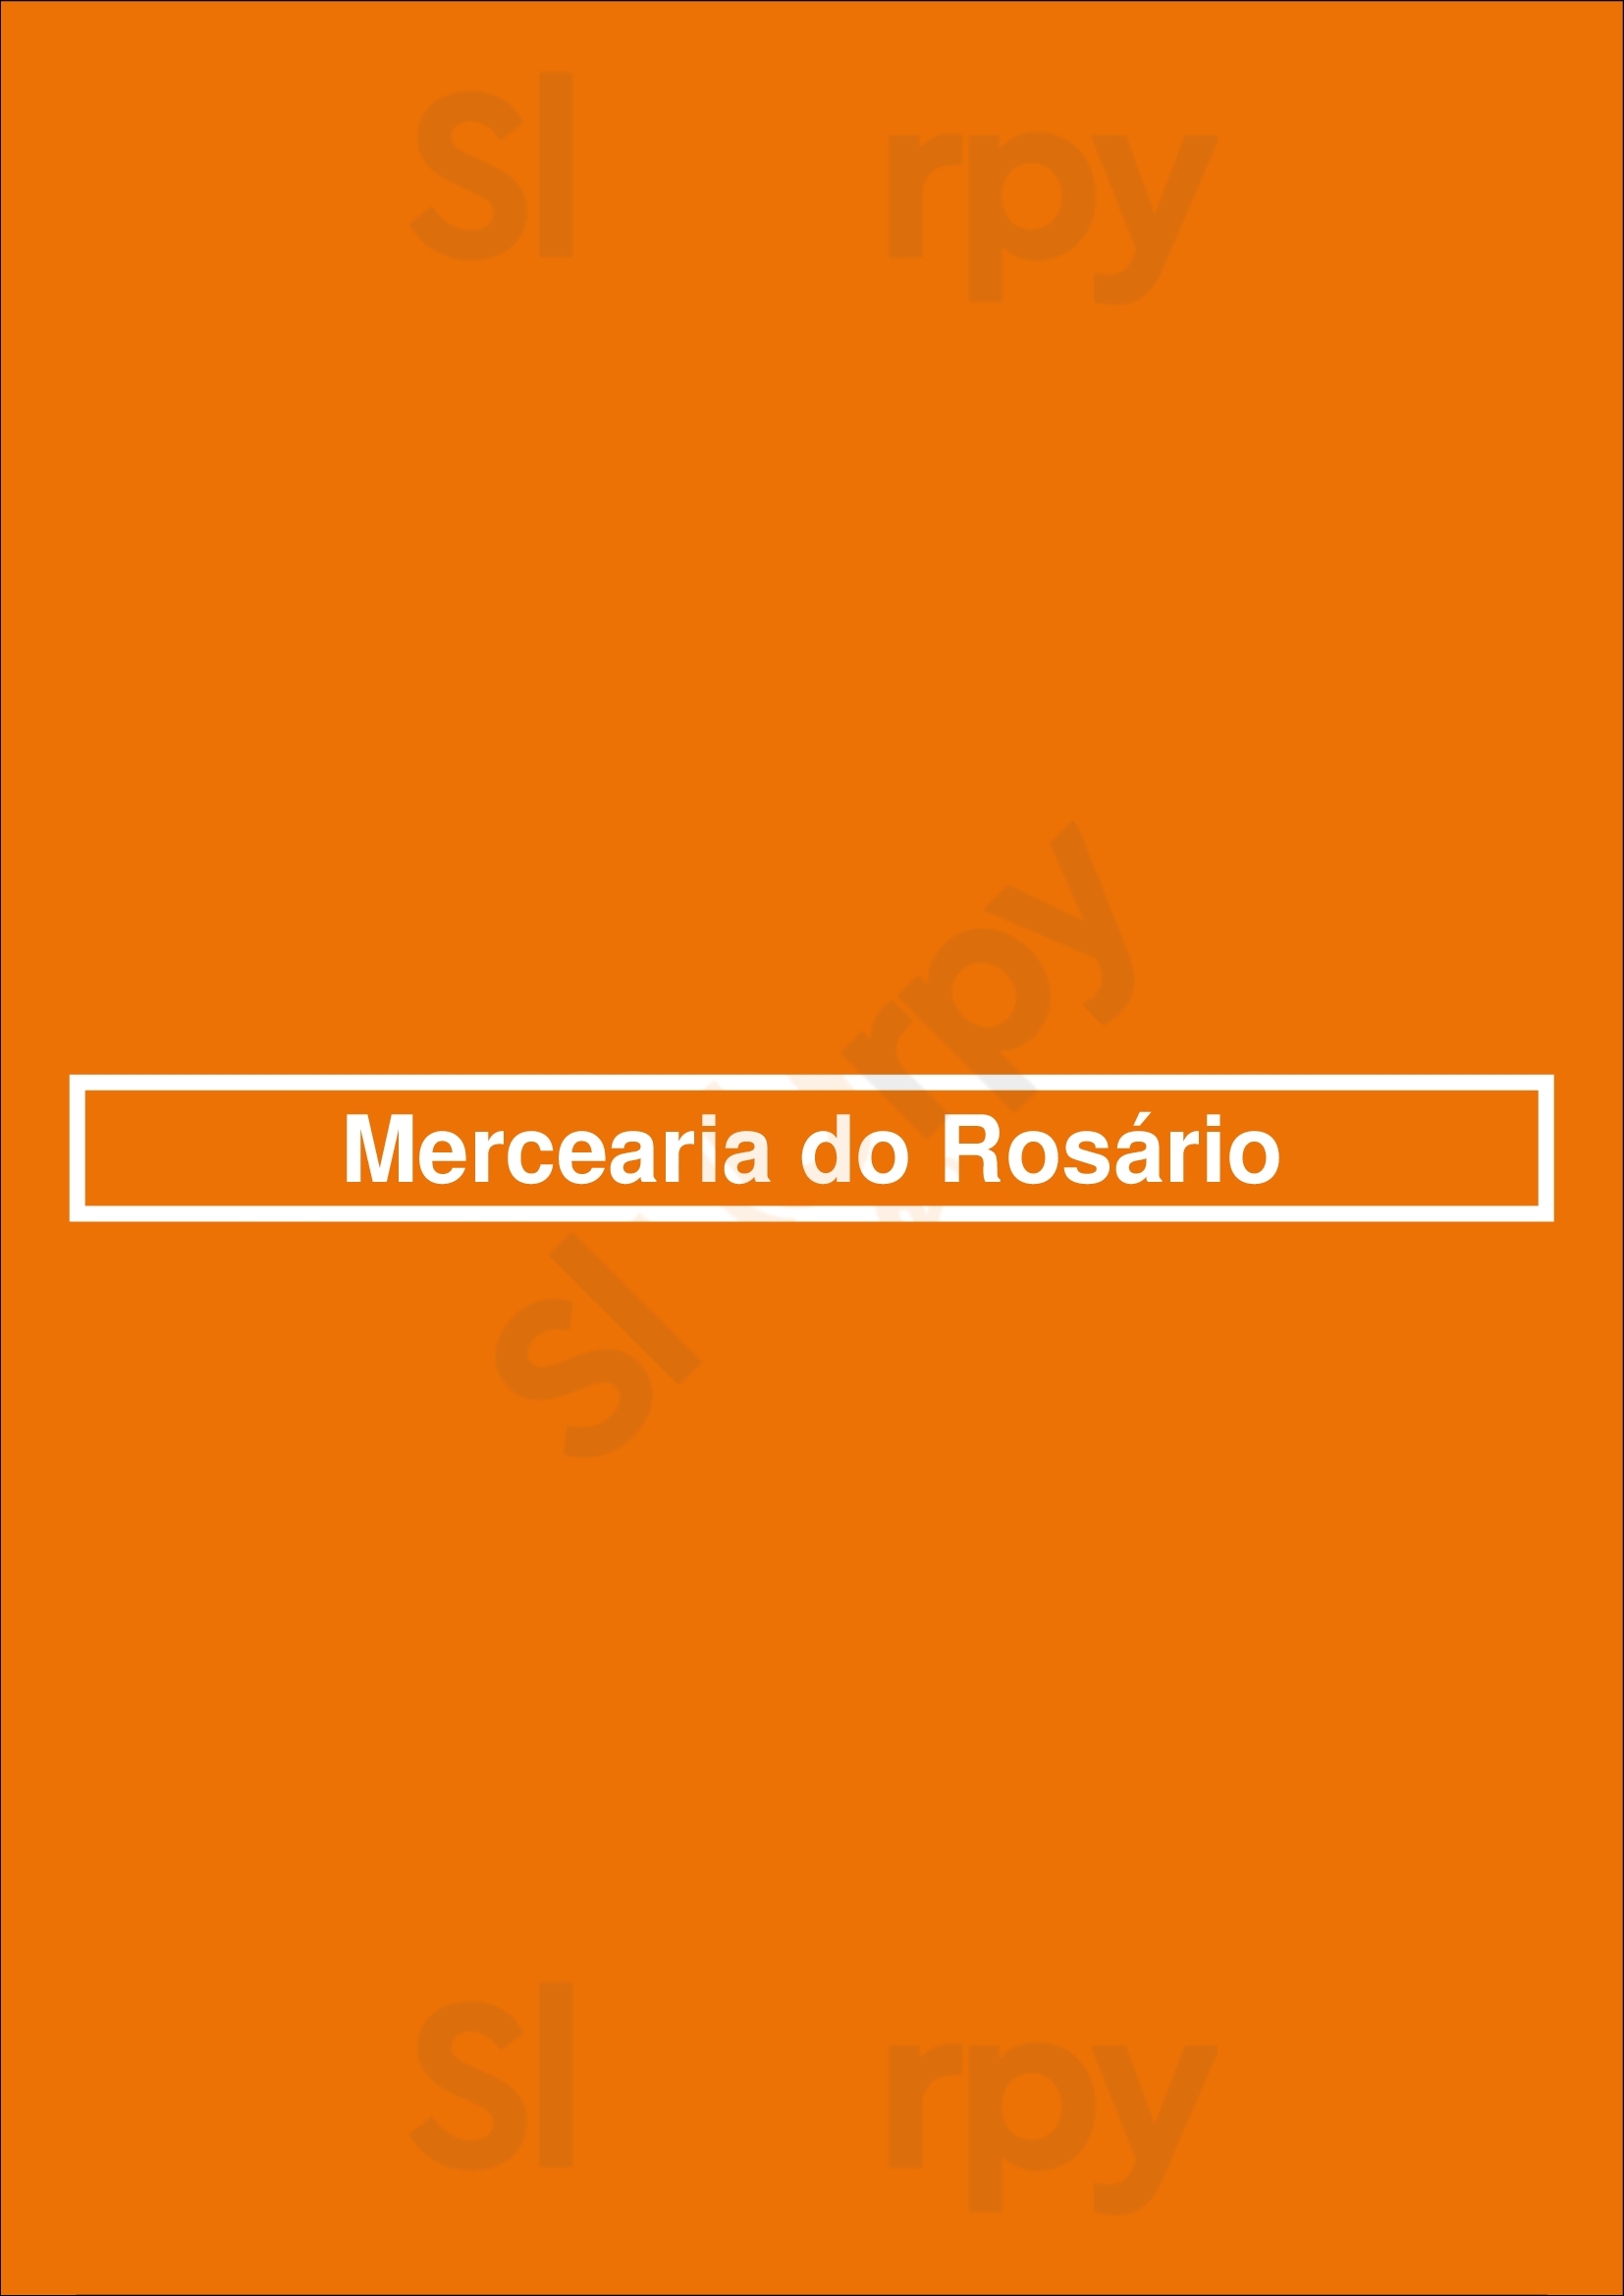 Mercearia Do Rosário Porto Menu - 1